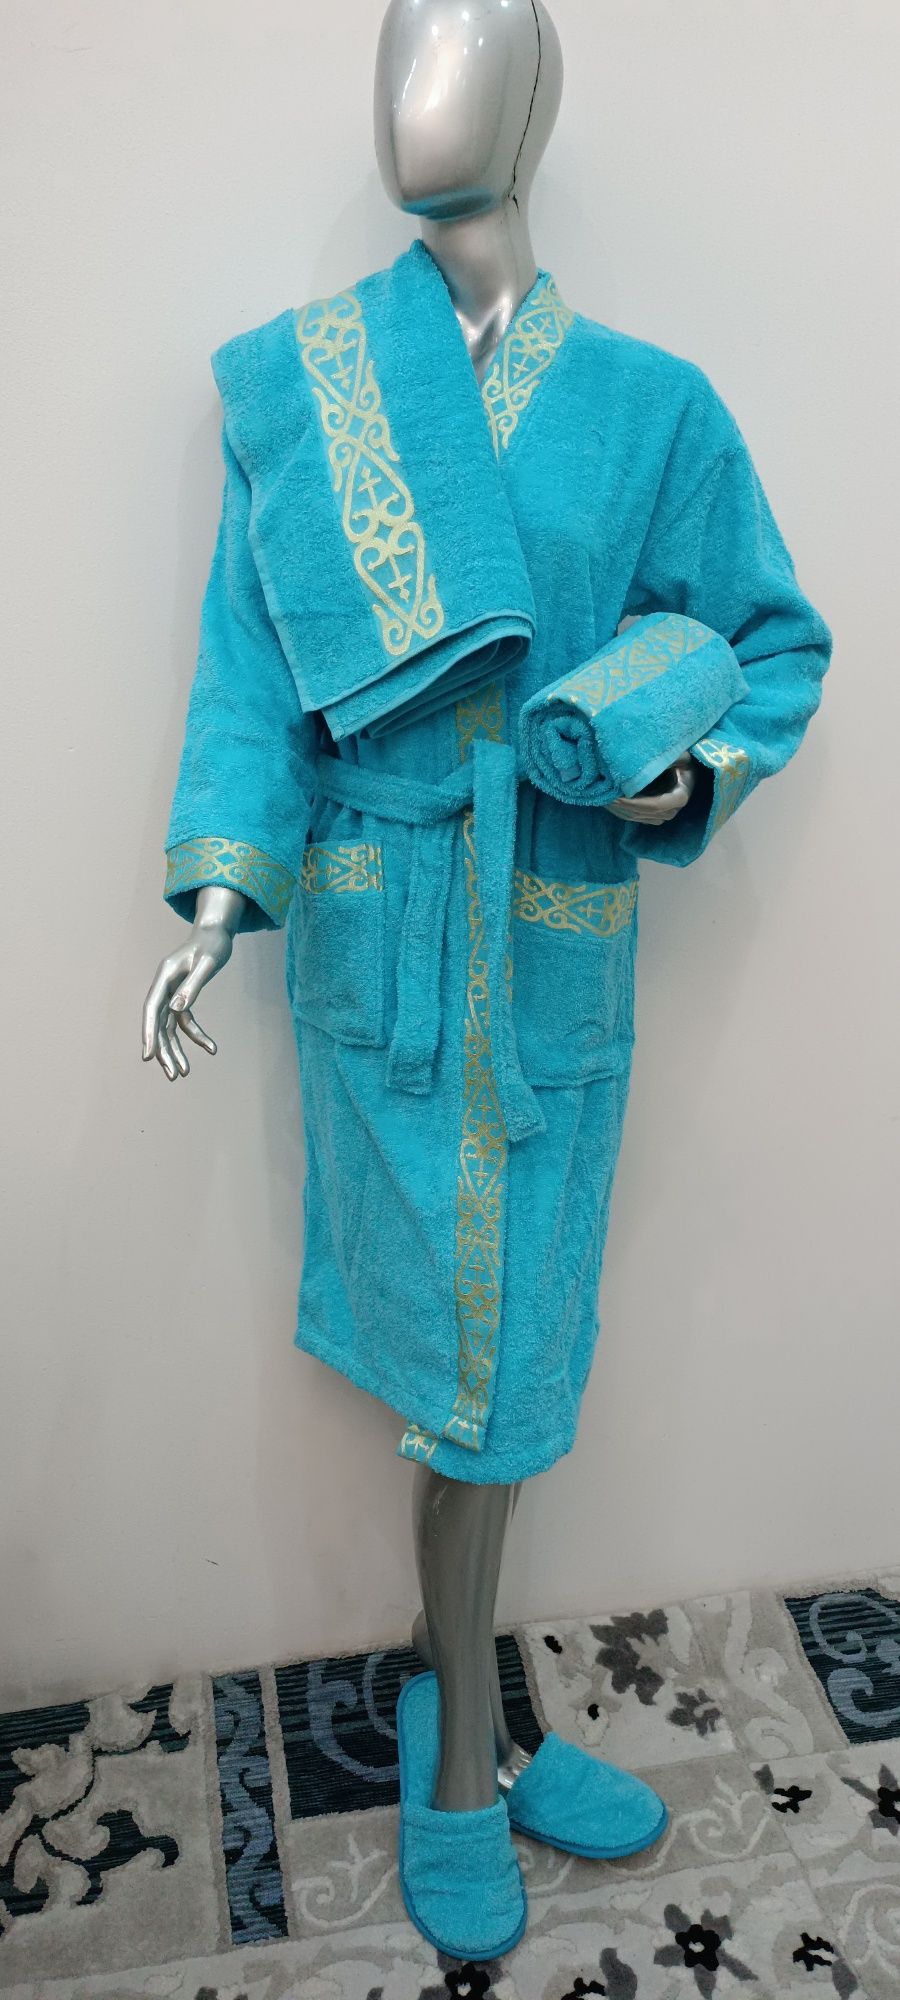 Халаты от люксового бренда ТАÇ